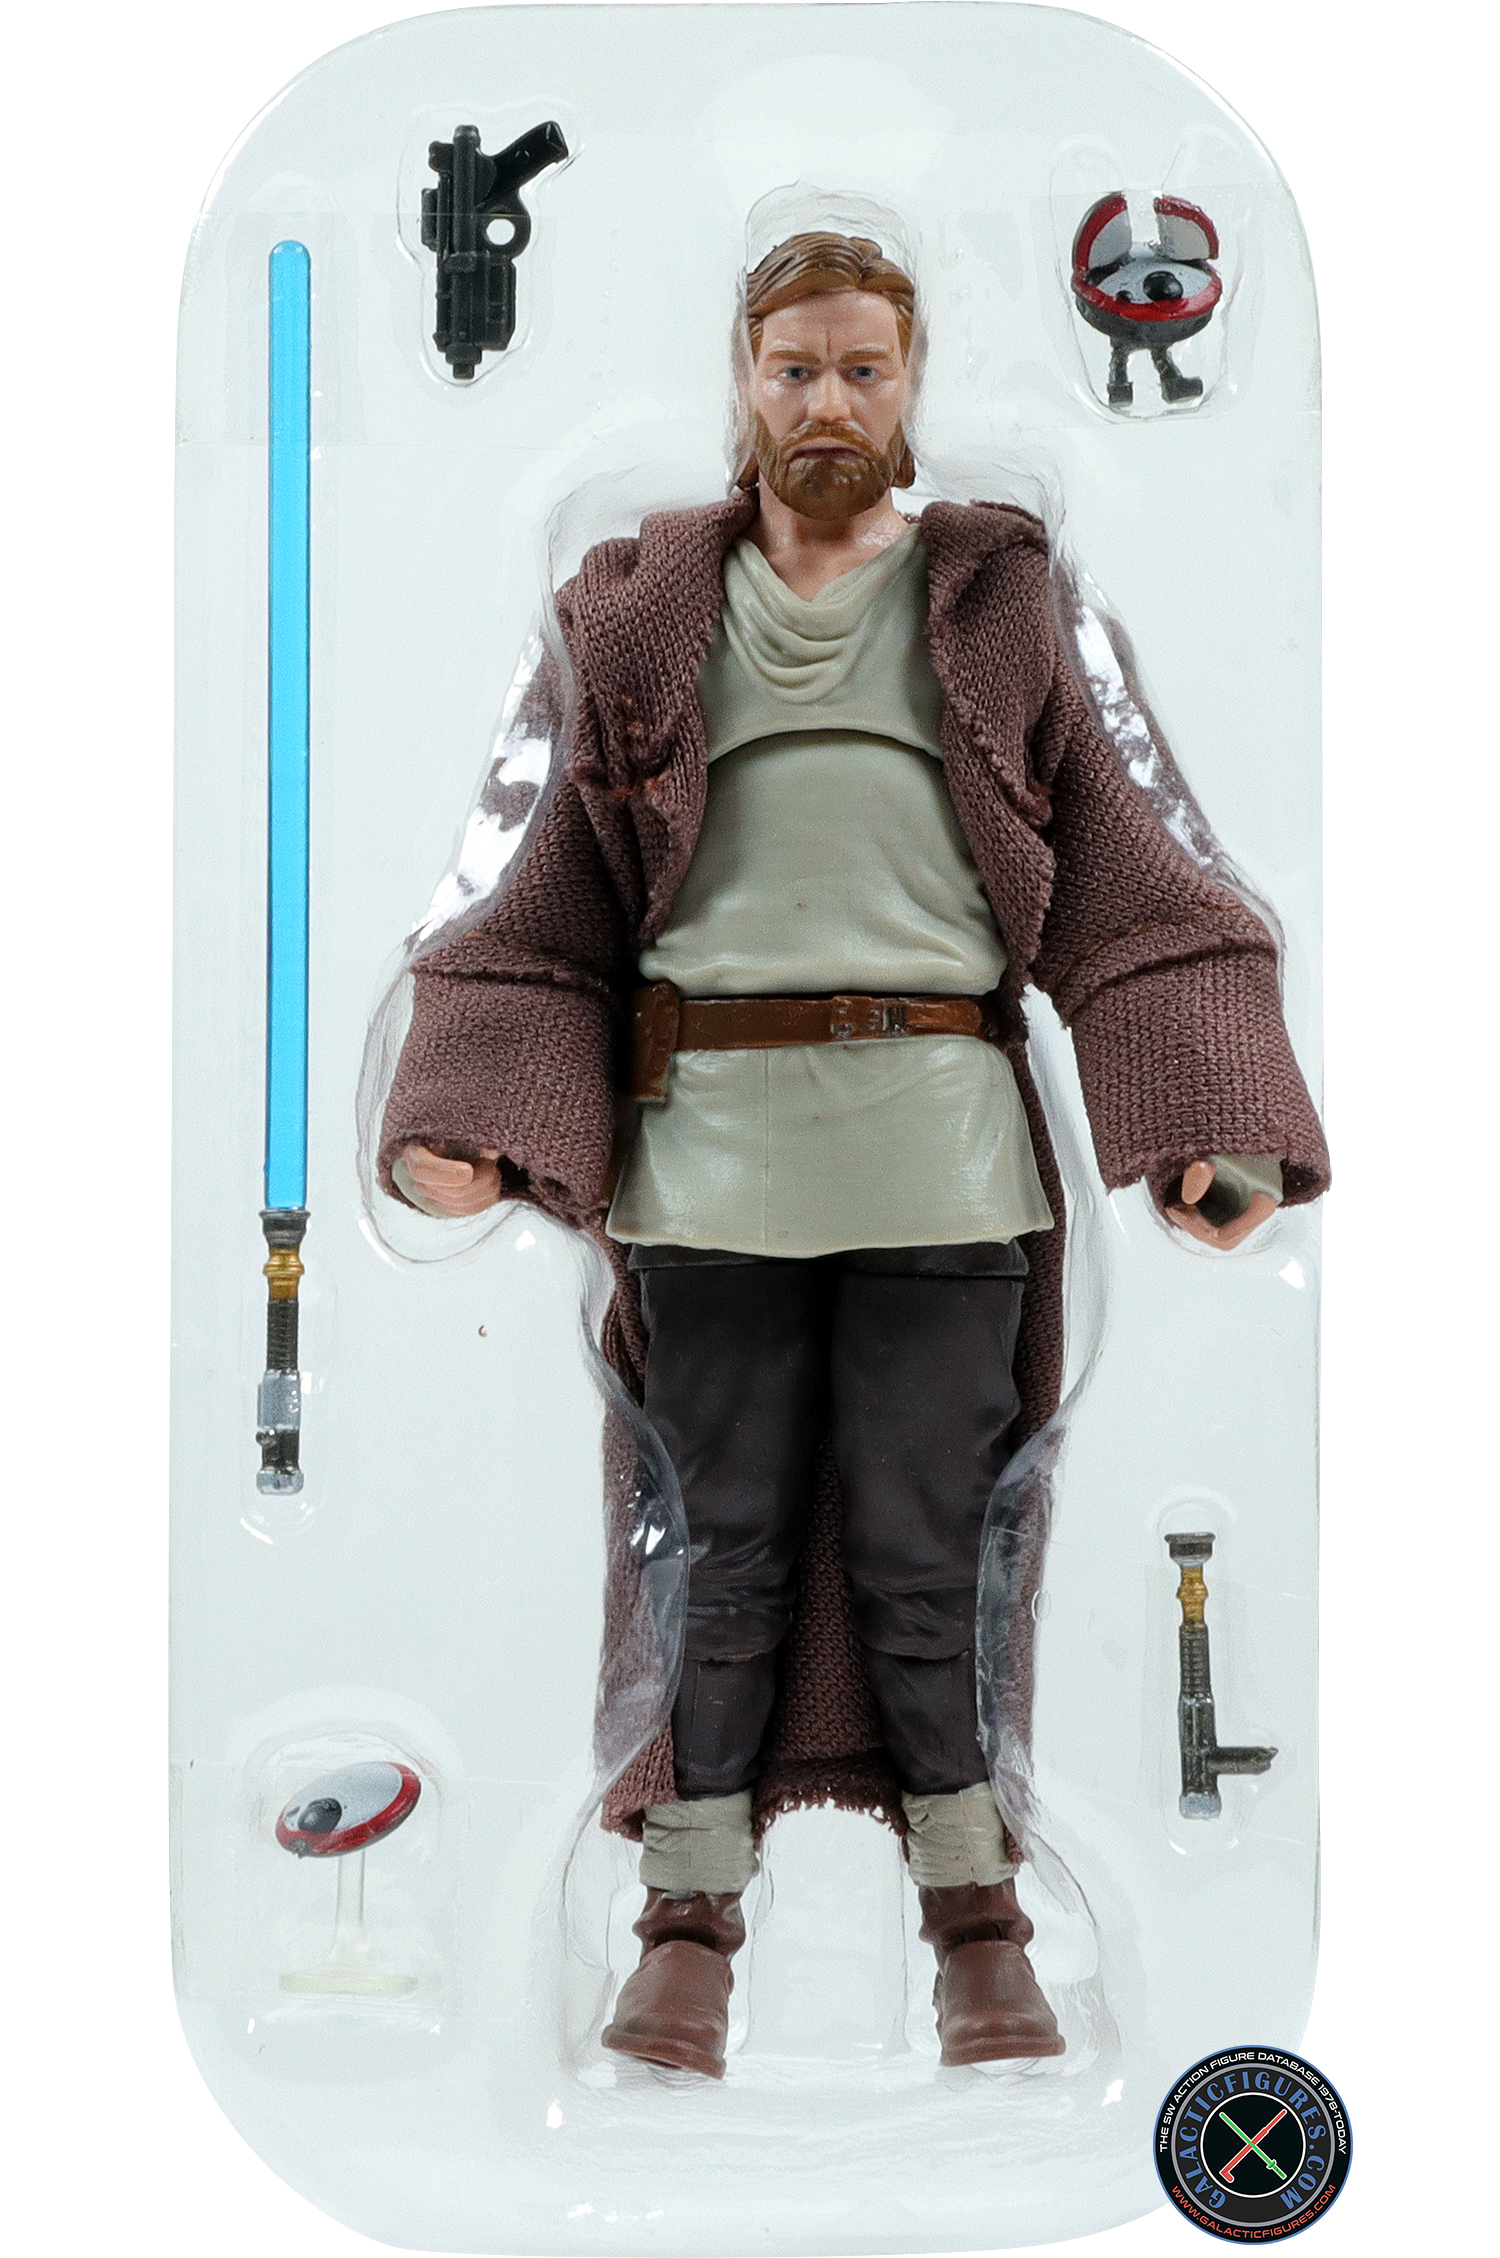 L0-LA59 With Obi-Wan Kenobi (Wandering Jedi)